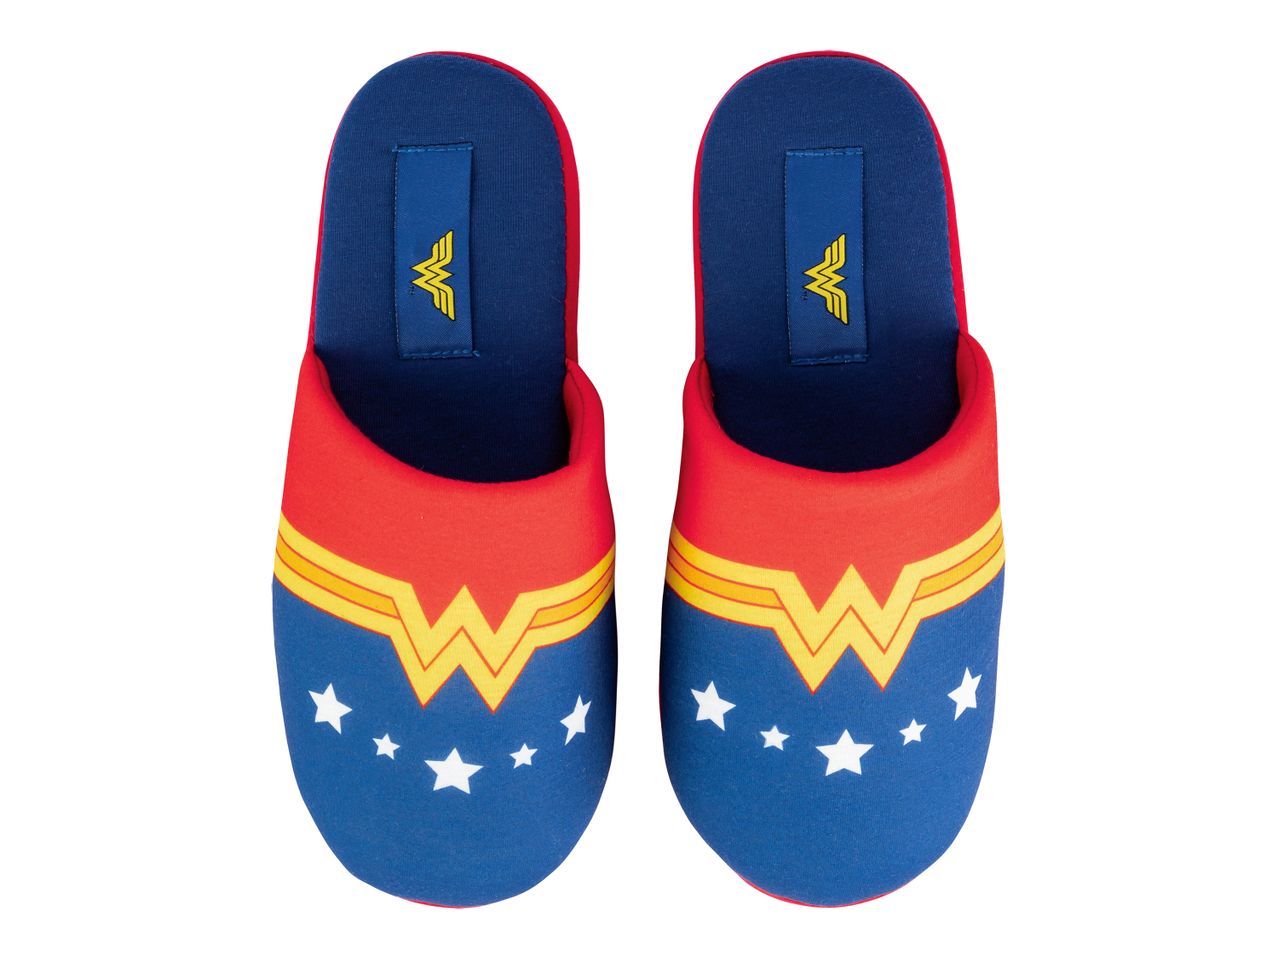 Pantofole da donna Snoopy, Wonder Woman, , prezzo 5.99 EUR